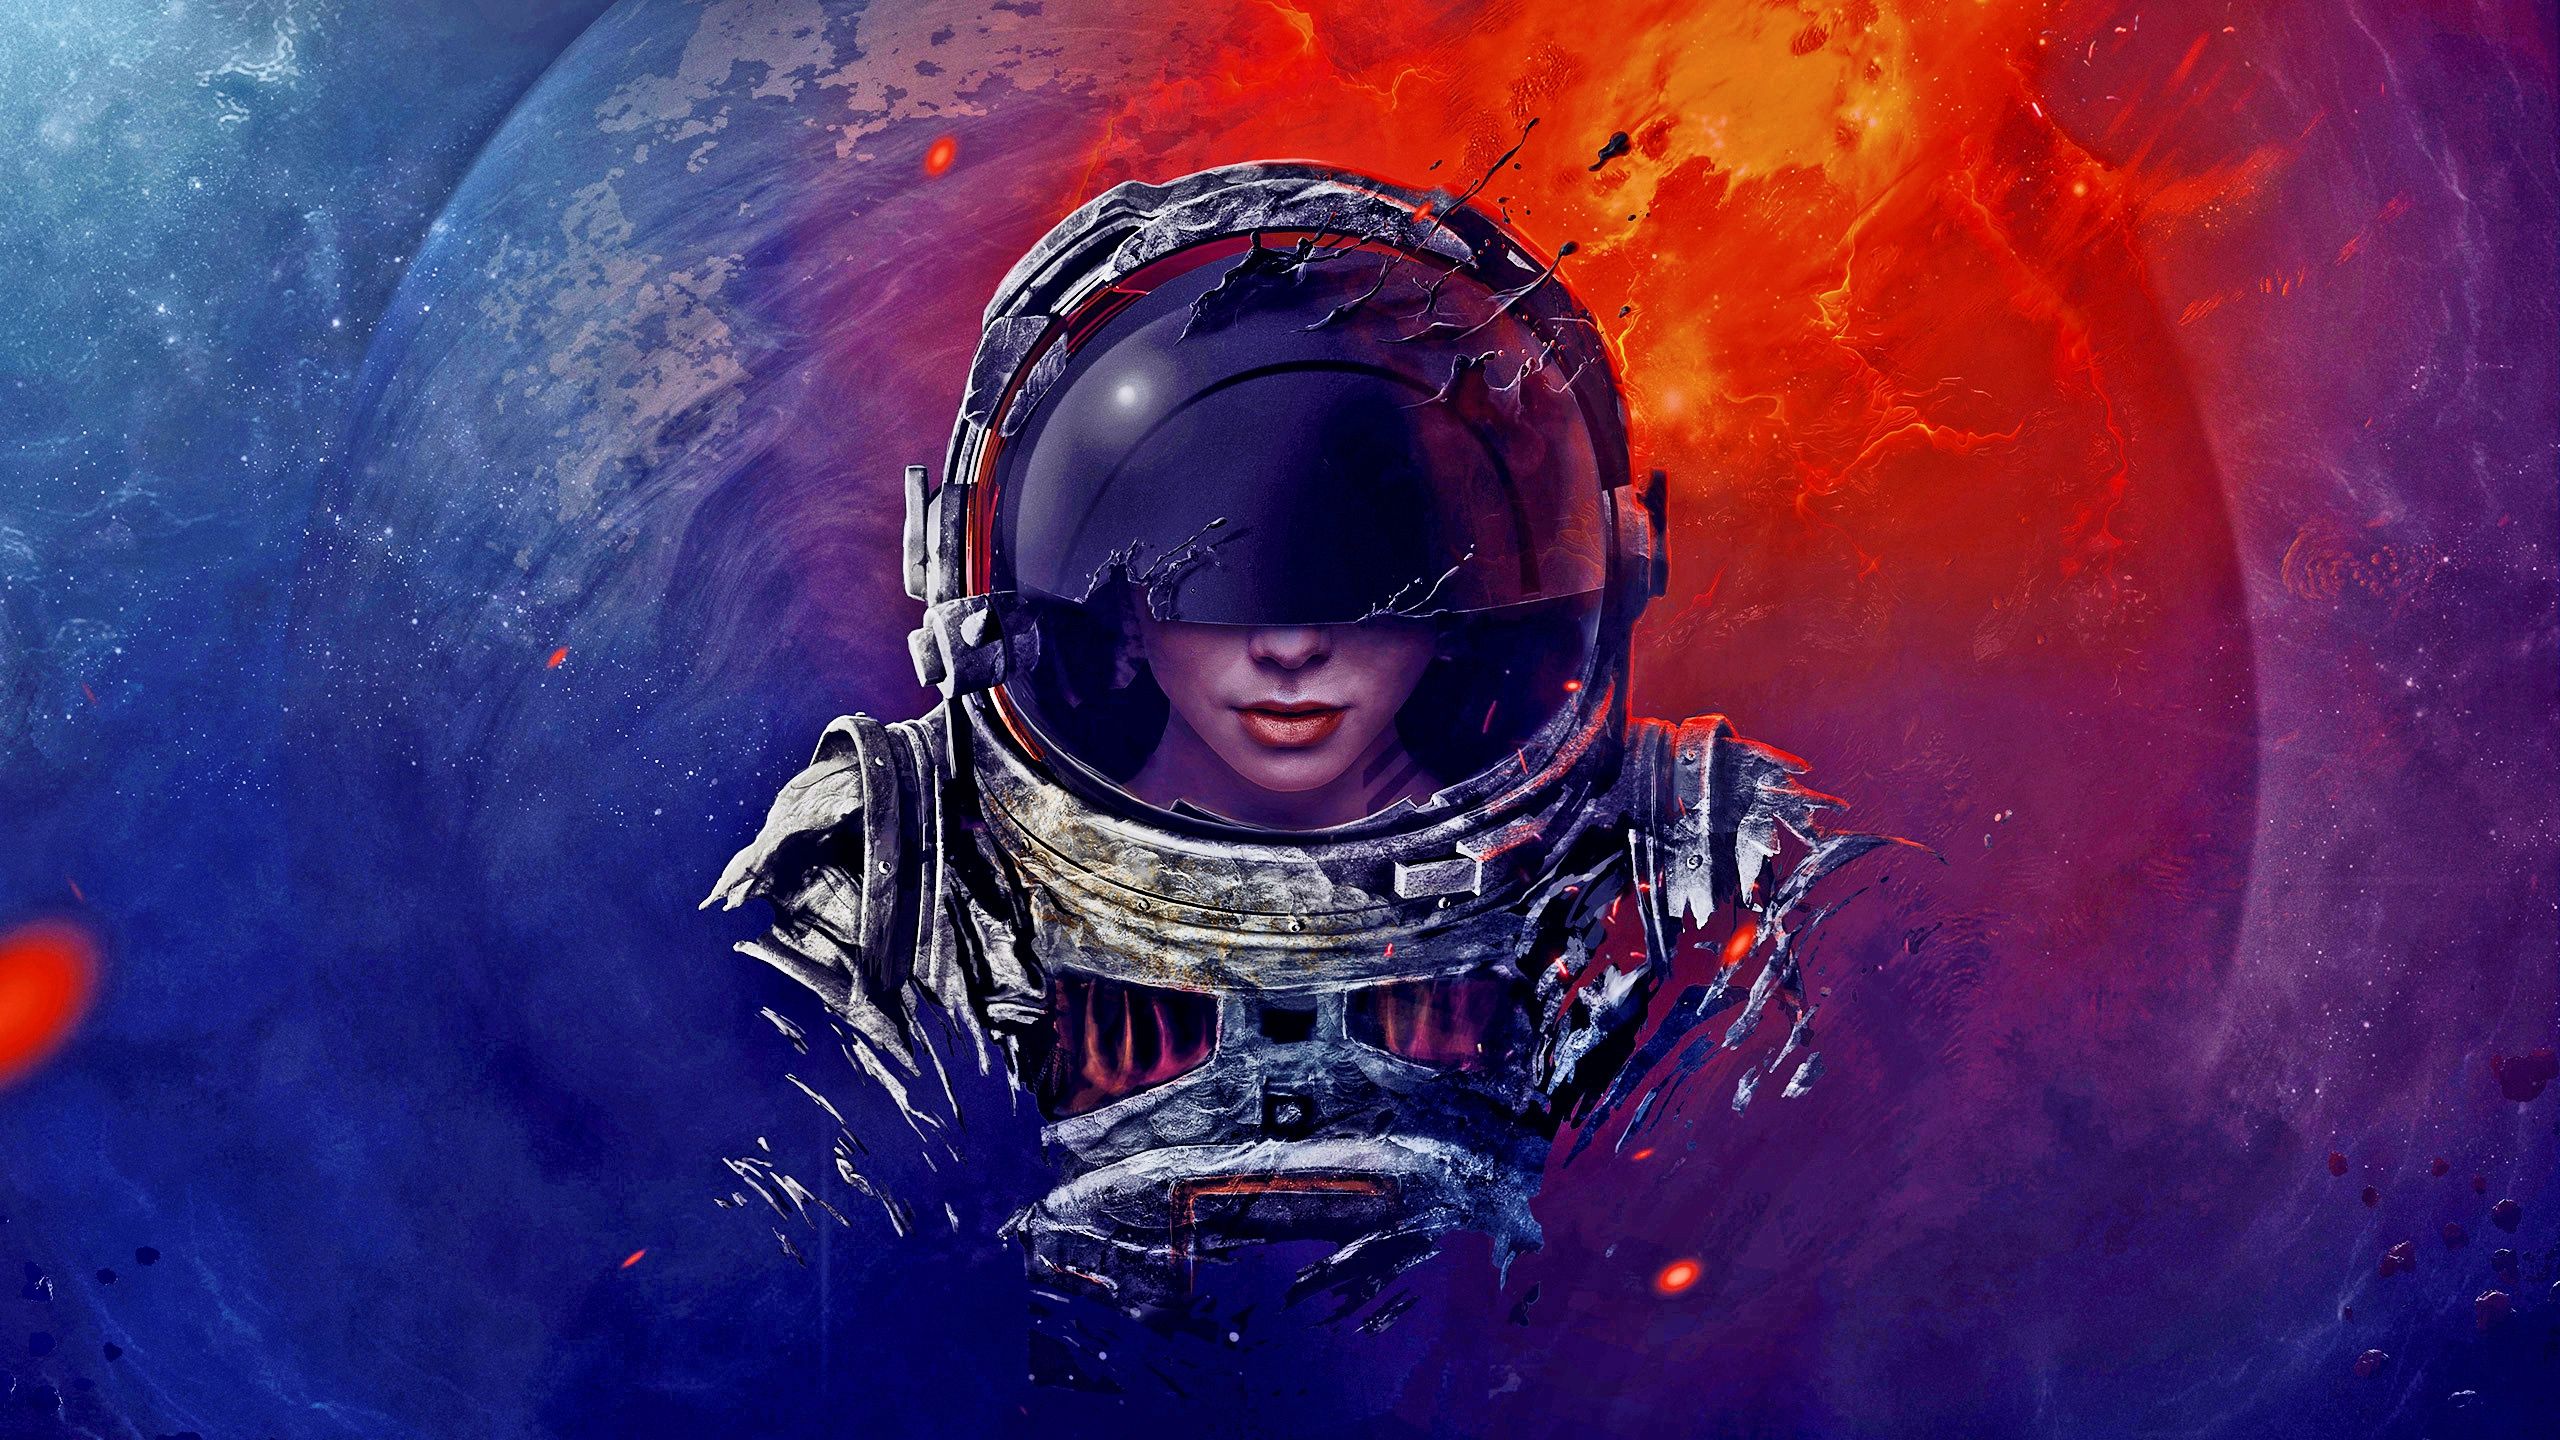 900 Best Astronaut wallpaper ideas in 2023  astronaut wallpaper astronaut  art space art